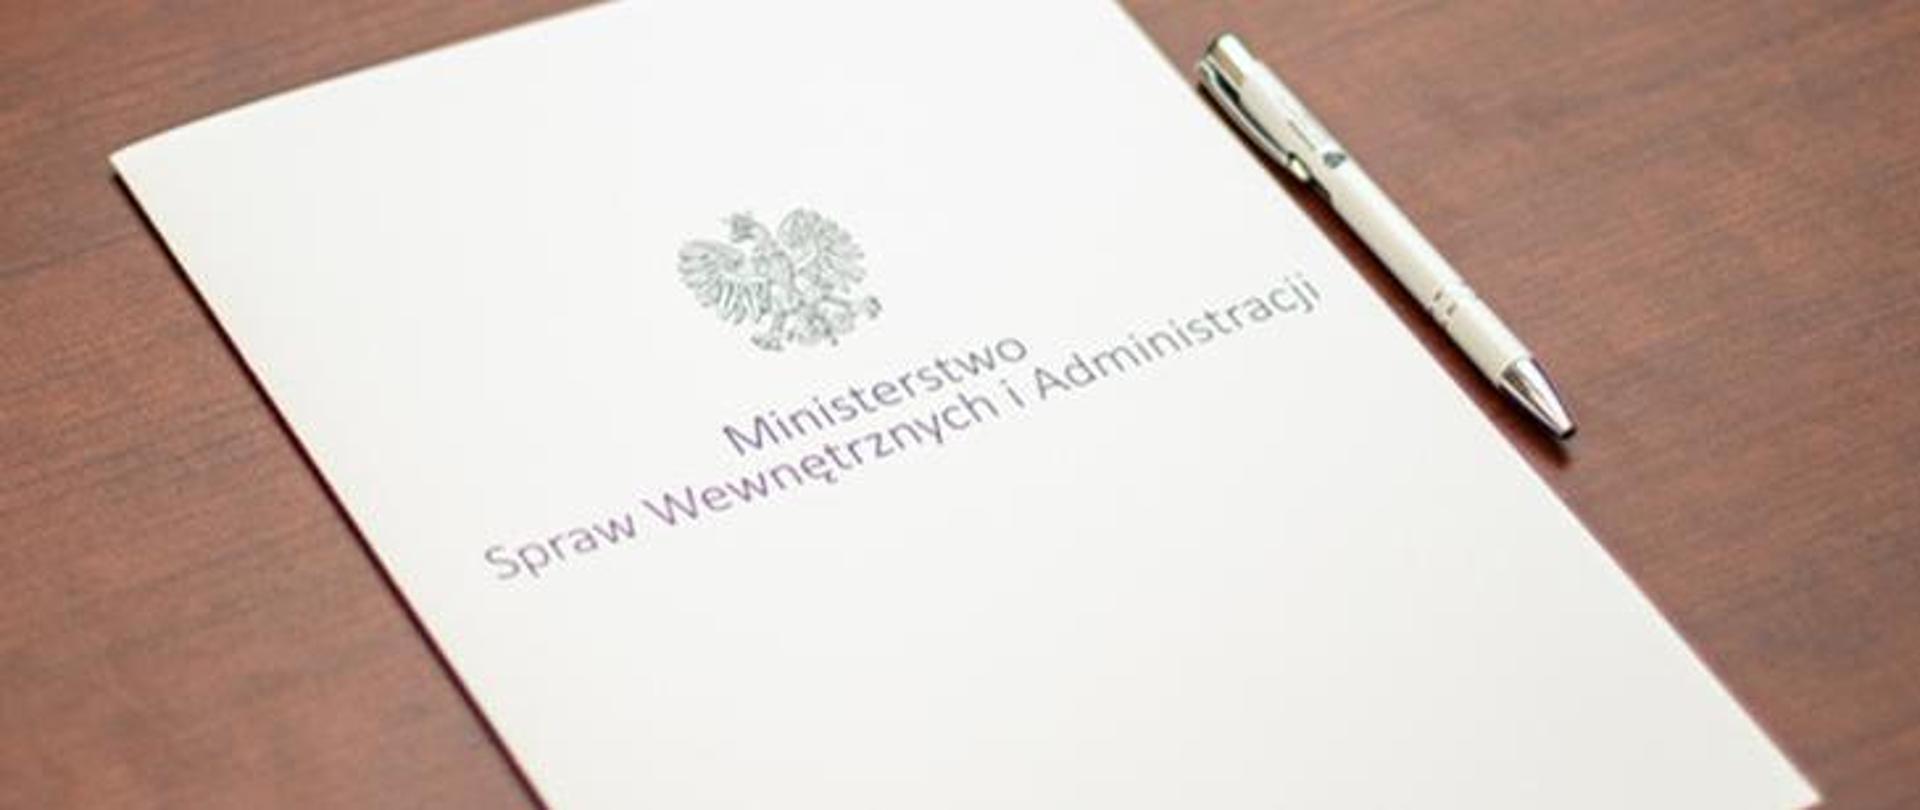 Teczka na dokumenty z napisem Ministerstwo Spraw Wewnętrznych i Administracji położona na stole, obok leży biały długopis